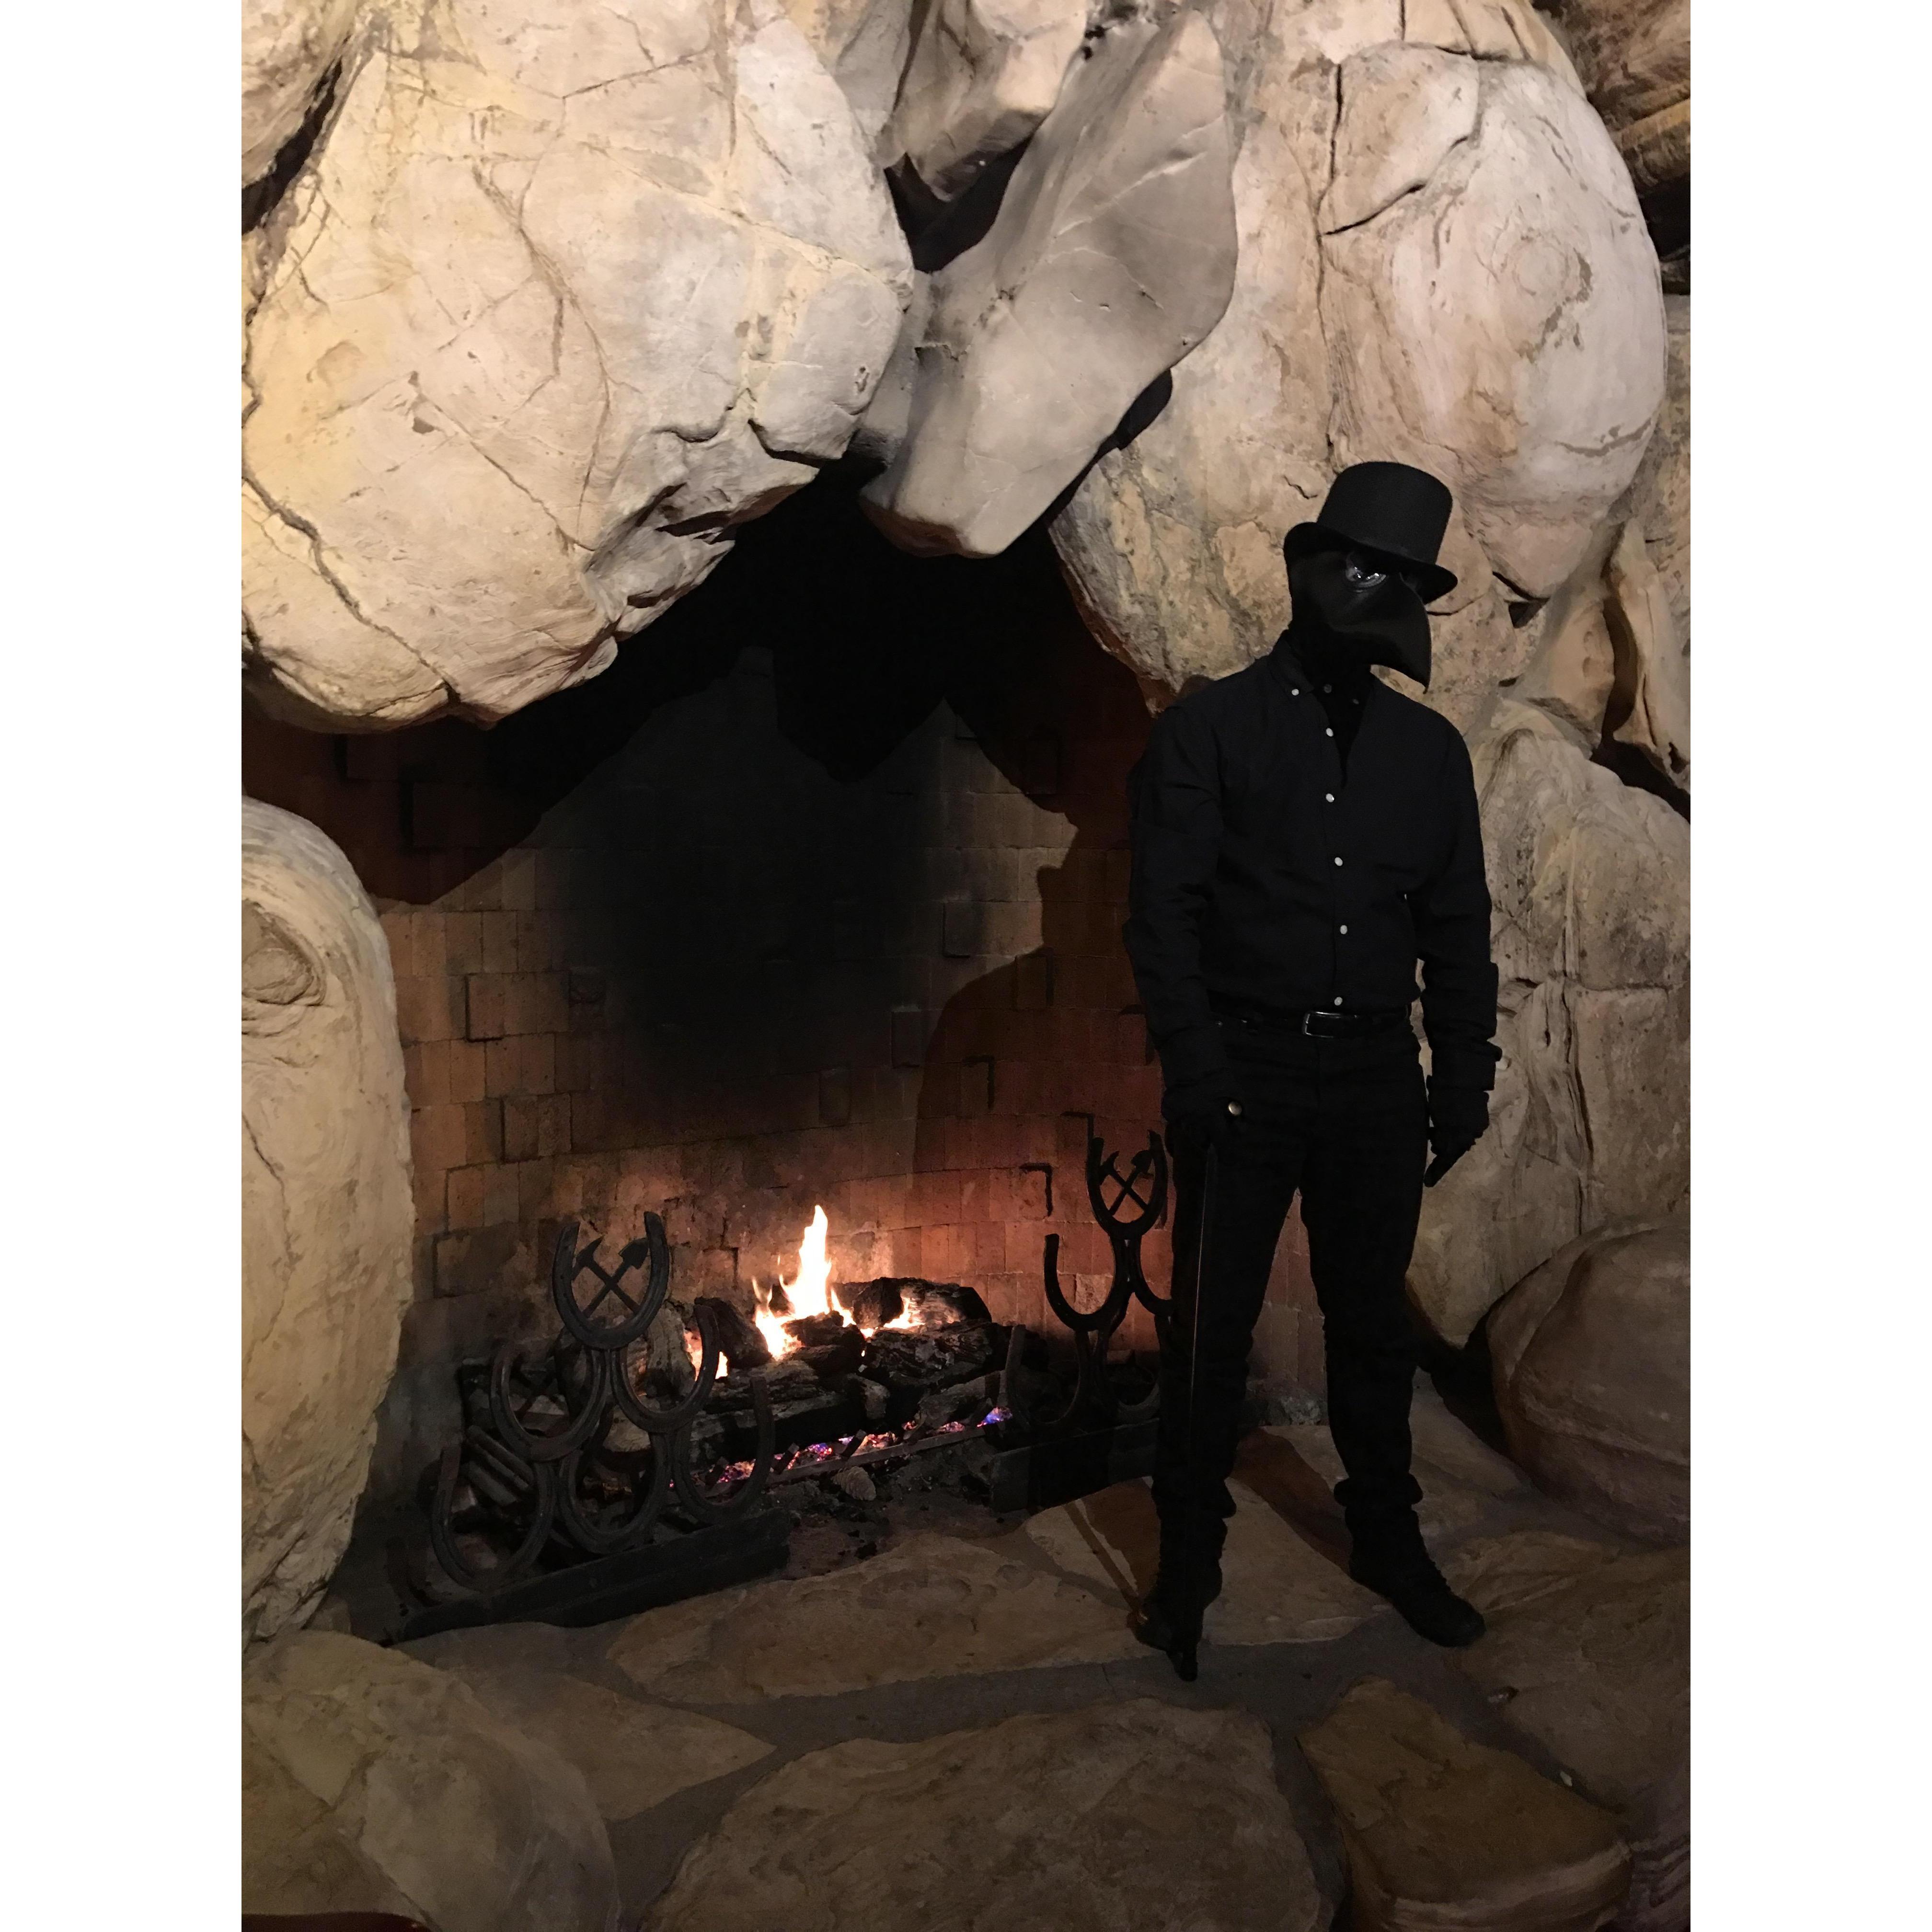 Fireplace inside of The Madonna Inn, Halloween 2020